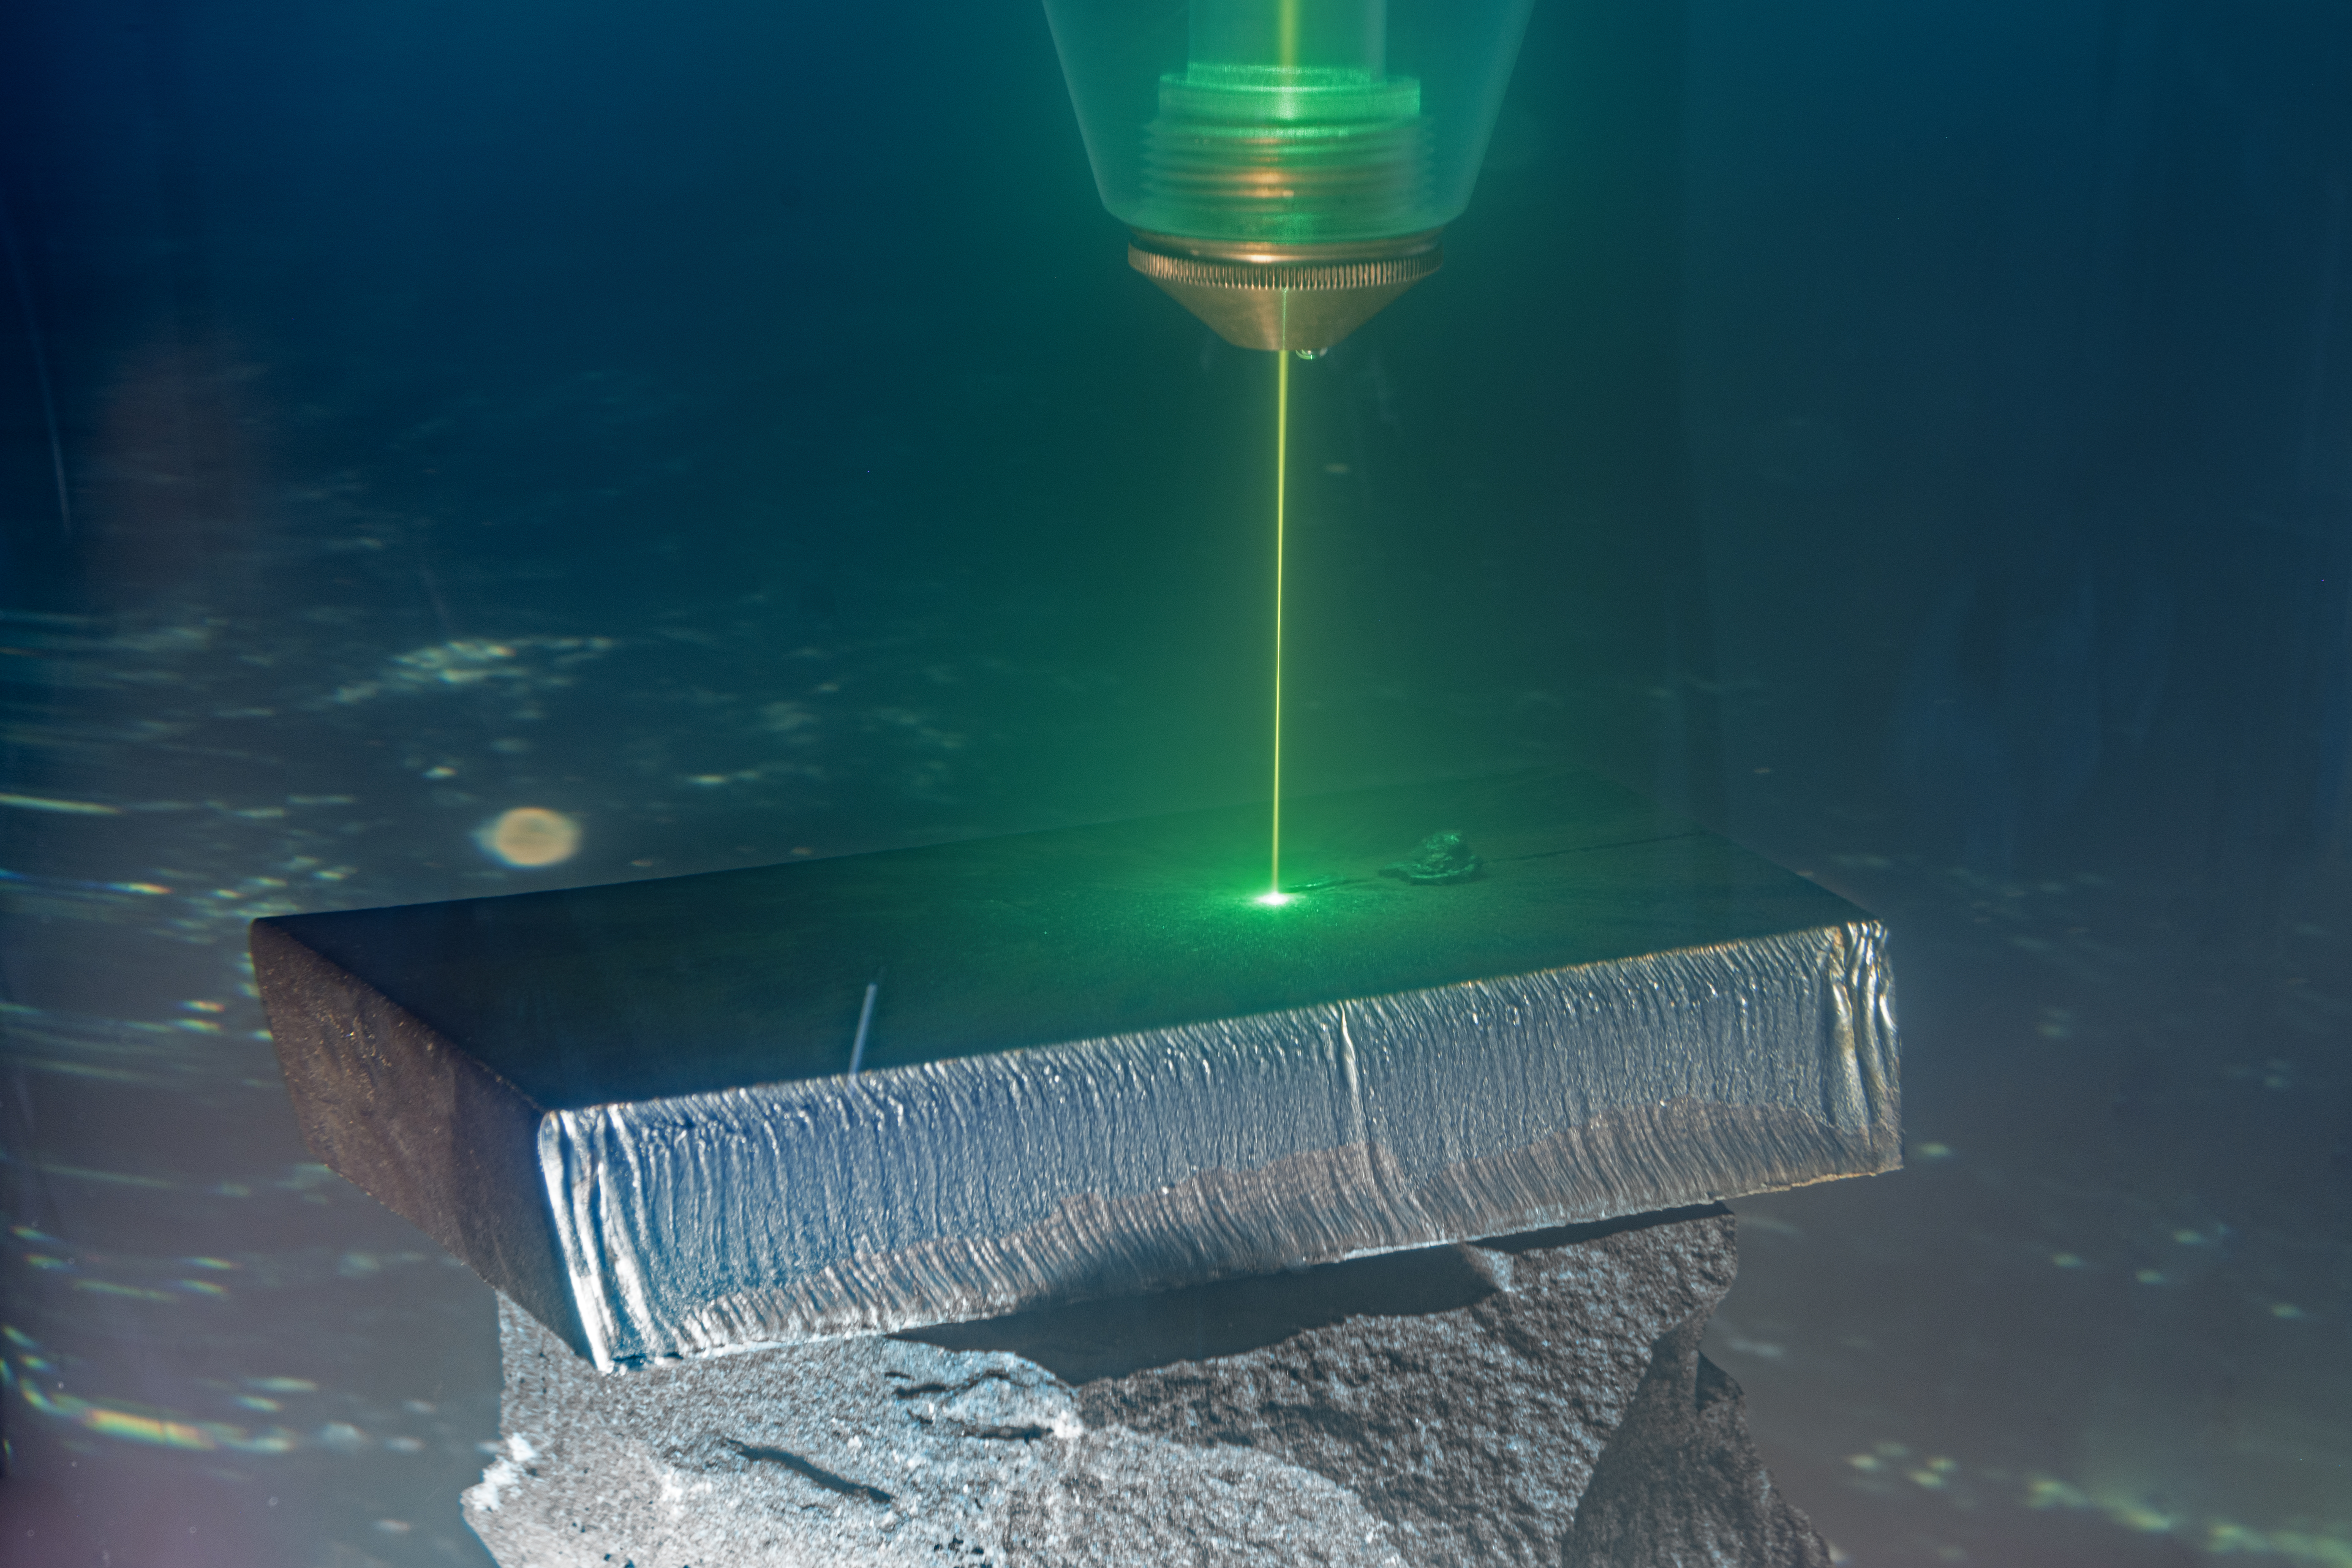 Ein besonders kurzwelliger grüner Laser, dessen Schneidfähigkeit auch im Wasser gegeben ist, soll im Meer Stahl und Metalle zerteilen. Das Fraunhofer IWS hat eine Lösung erforscht und entwickelt, die bereits im Labor funktioniert.